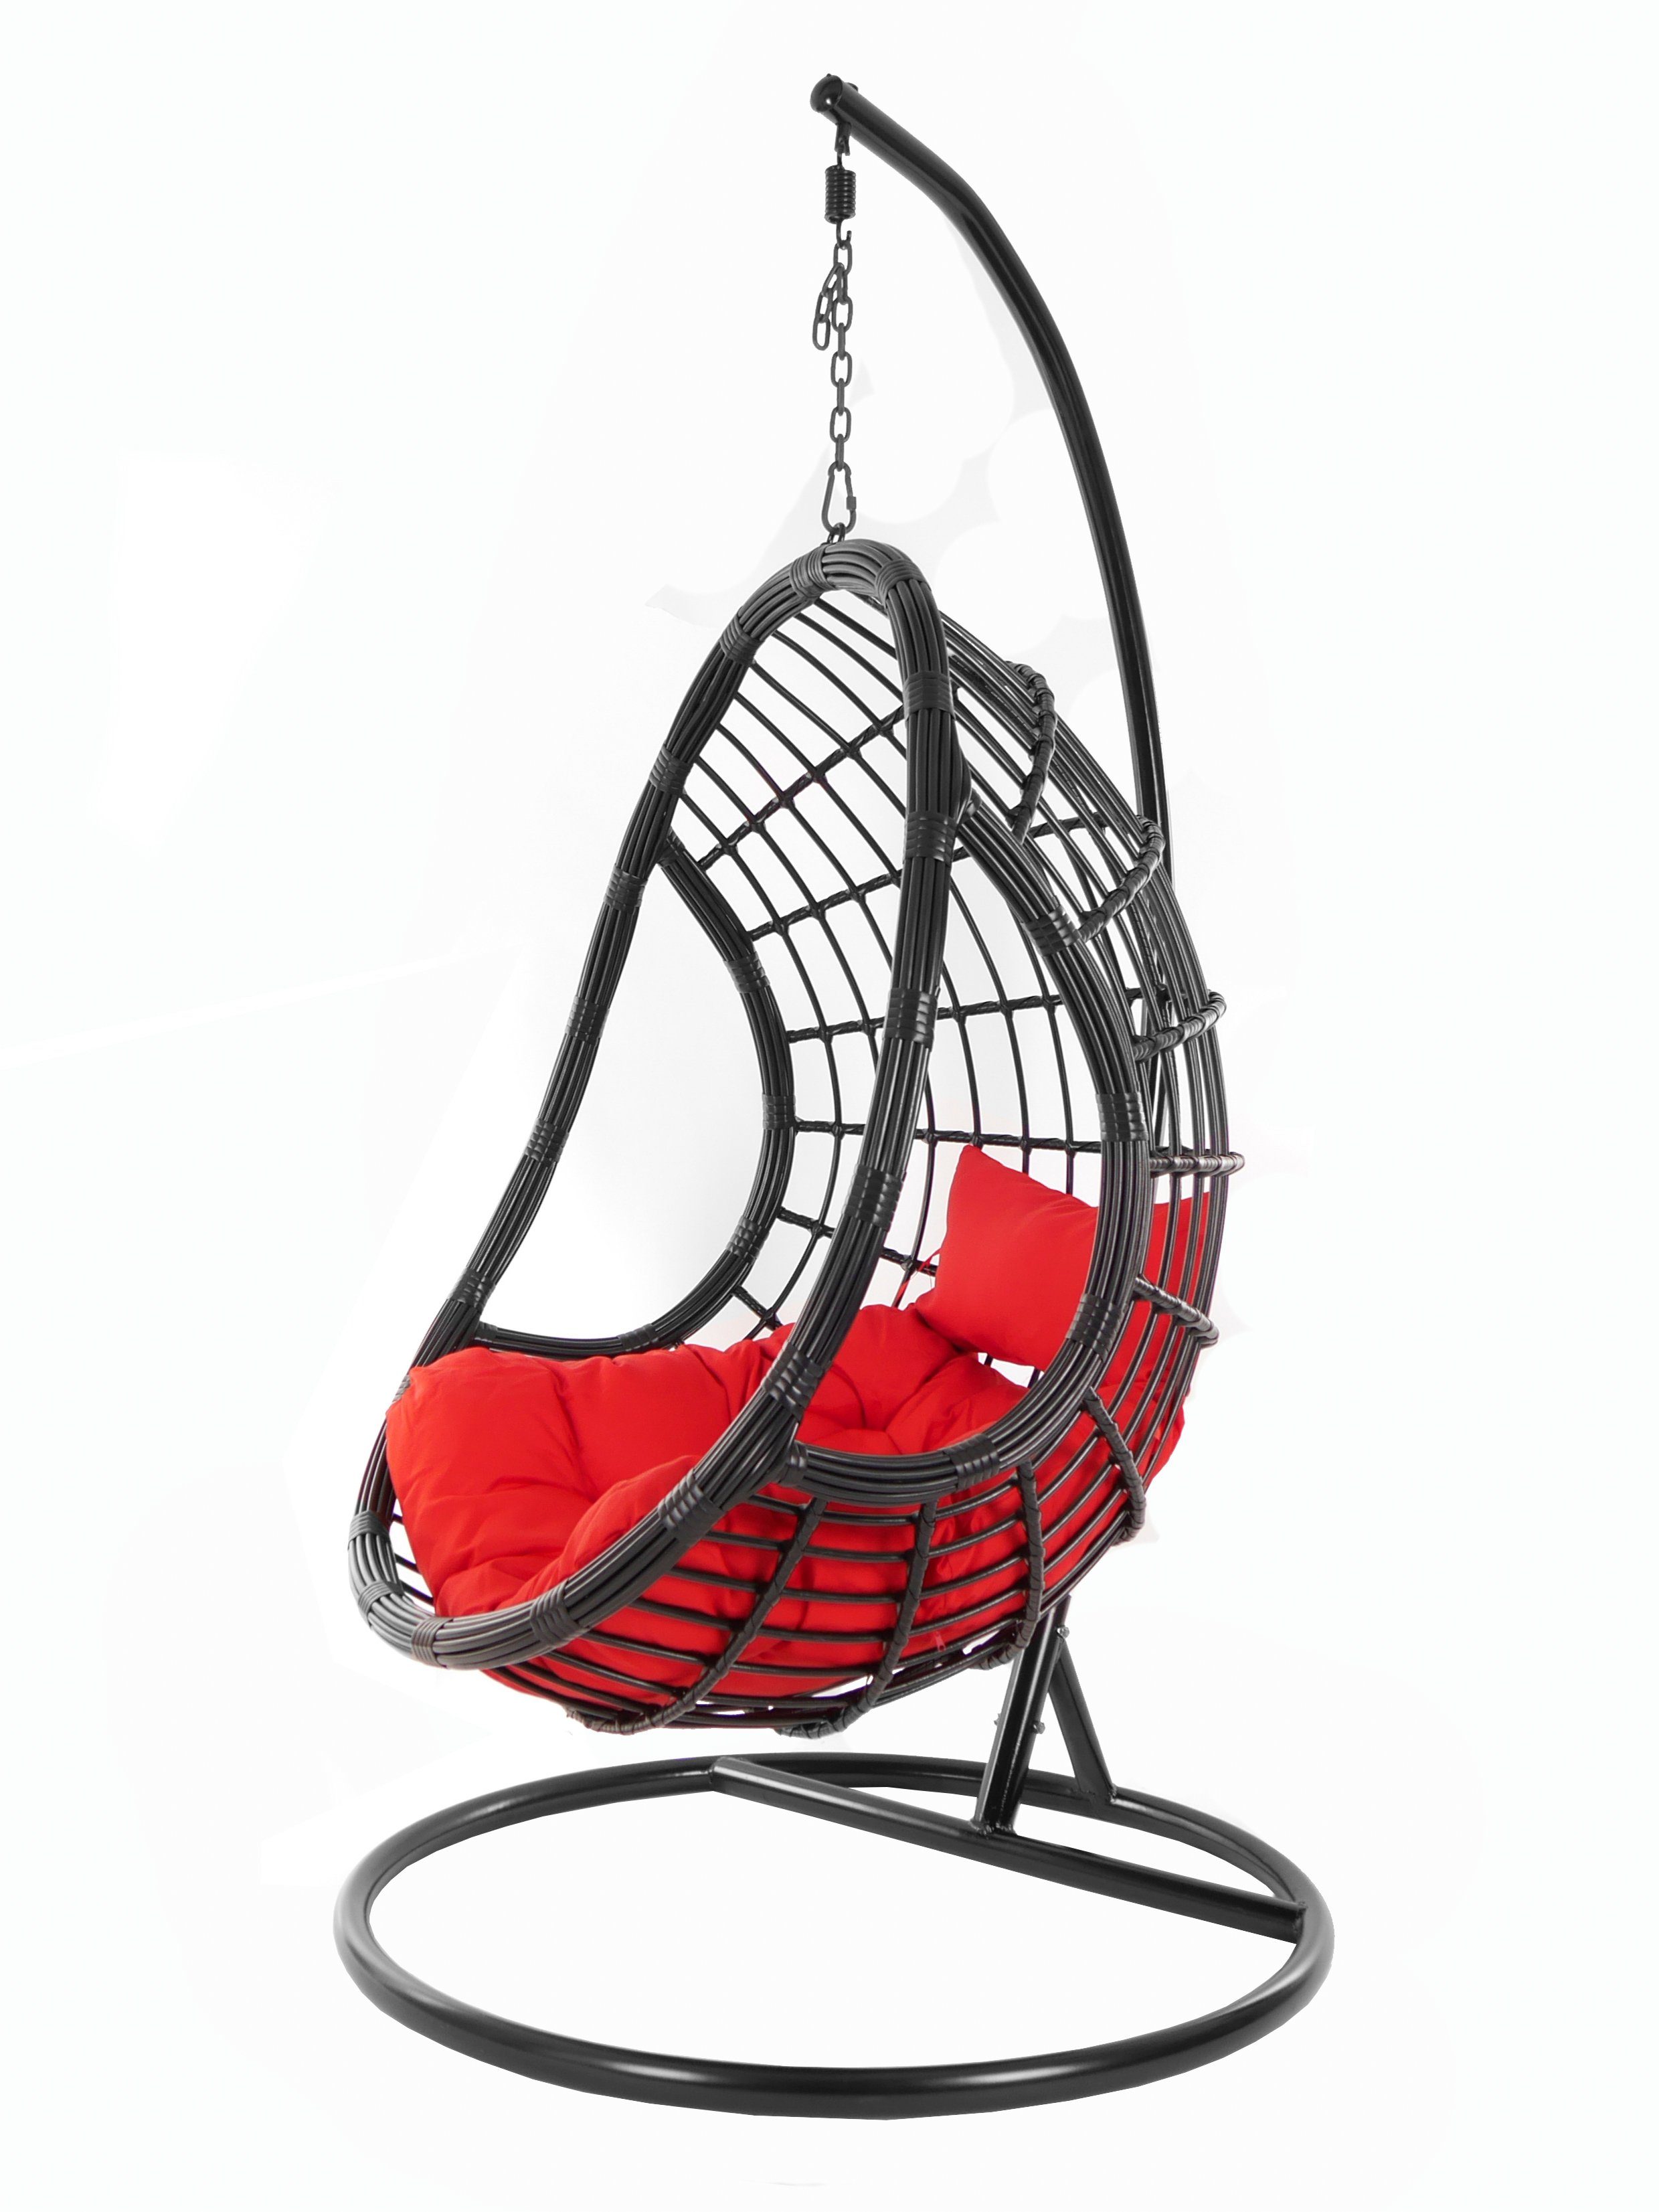 KIDEO Hängesessel PALMANOVA black, Swing Chair, schwarz, Loungemöbel, Hängesessel mit Gestell und Kissen, Schwebesessel, edles Design rot (3050 scarlet)